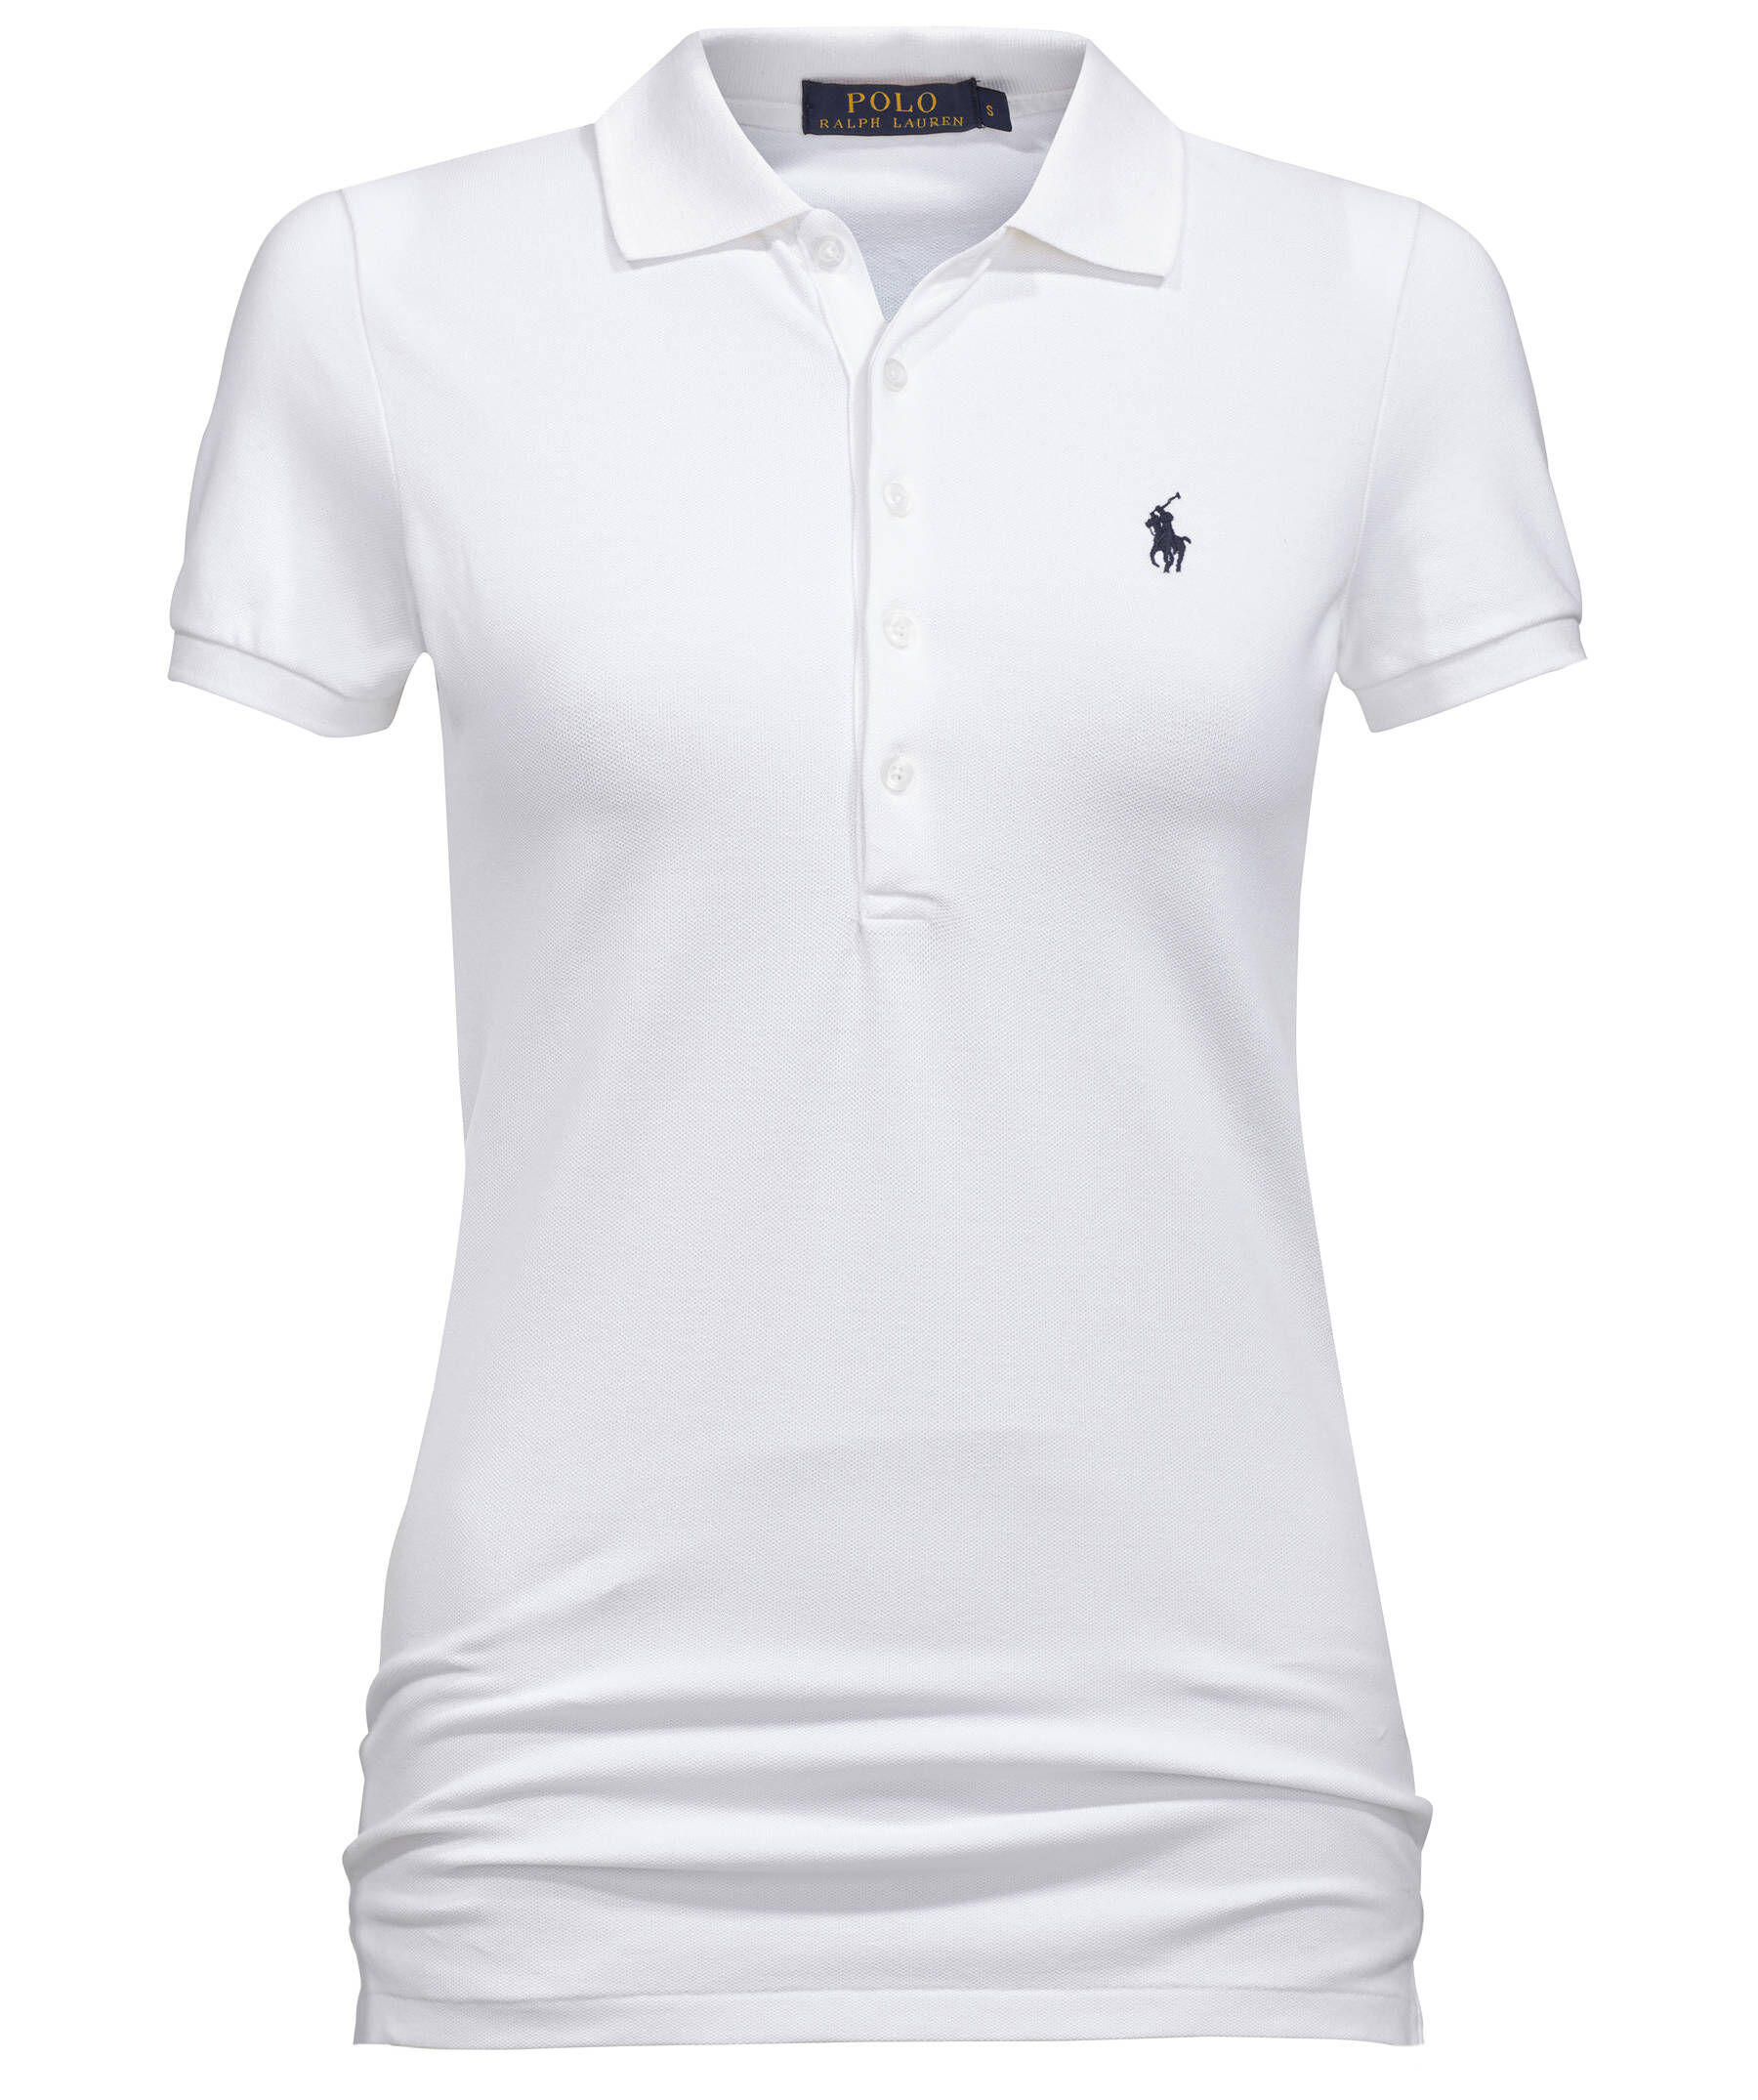 Polo Ralph Lauren Damen Poloshirt Gr INT M Damen Bekleidung Shirts & Tops Poloshirts 